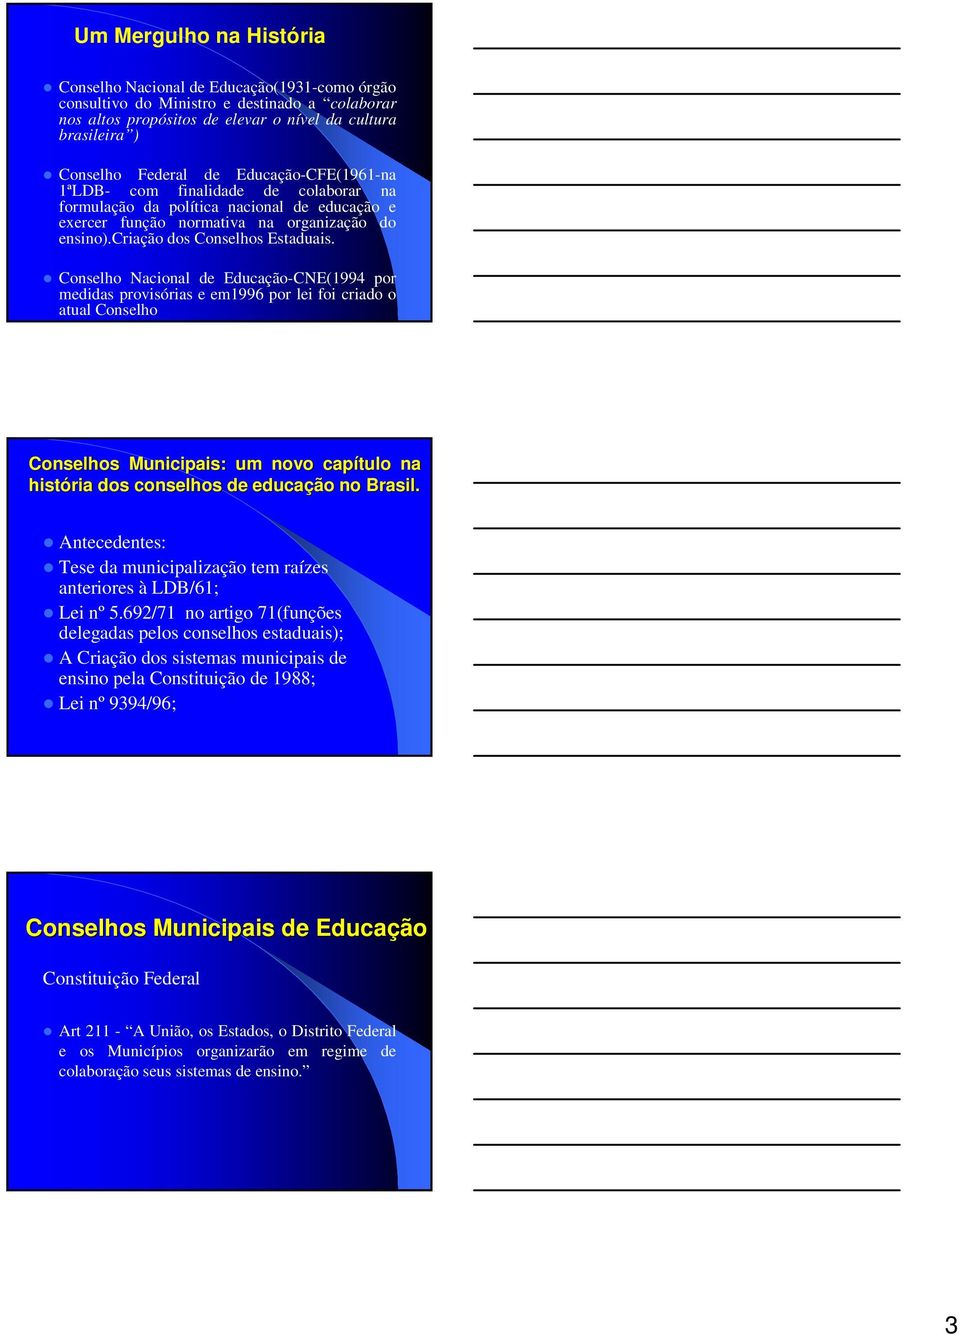 Conselho Nacional de Educação-CNE(1994 por medidas provisórias e em1996 por lei foi criado o atual Conselho Conselhos Municipais: um novo capítulo na história dos conselhos de educação no Brasil.